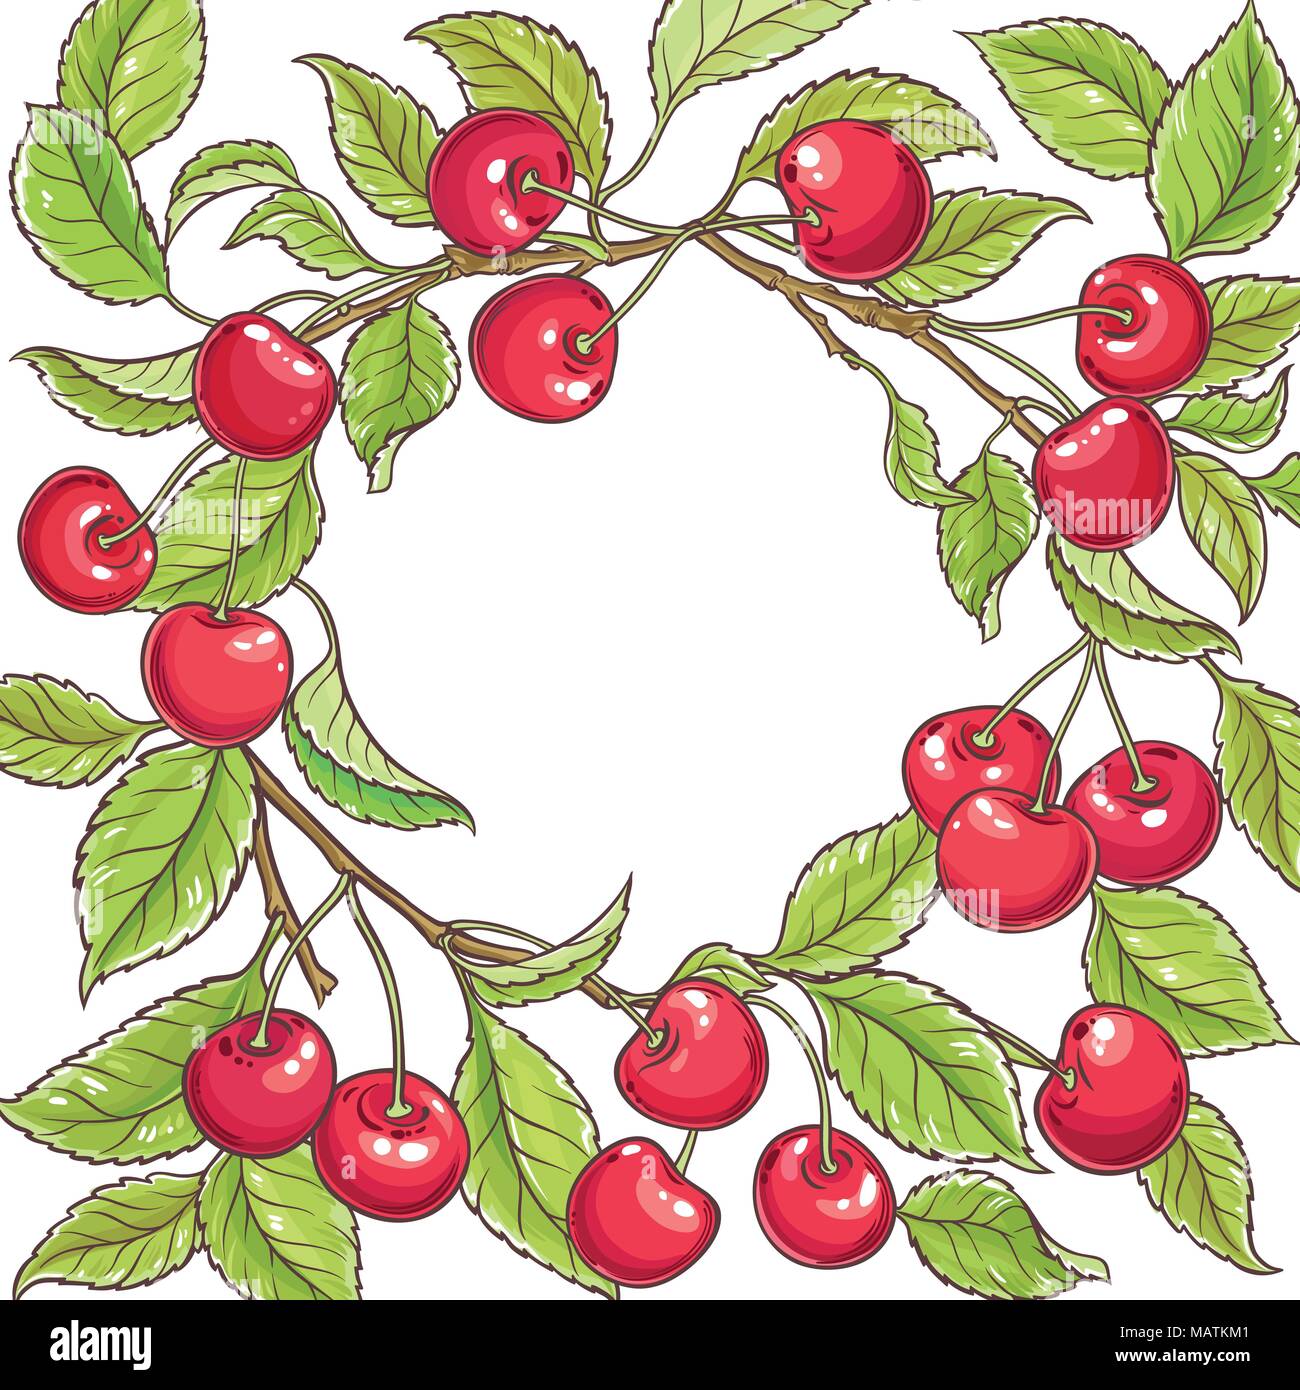 cherry branch vector frame on white backgrond Stock Vector